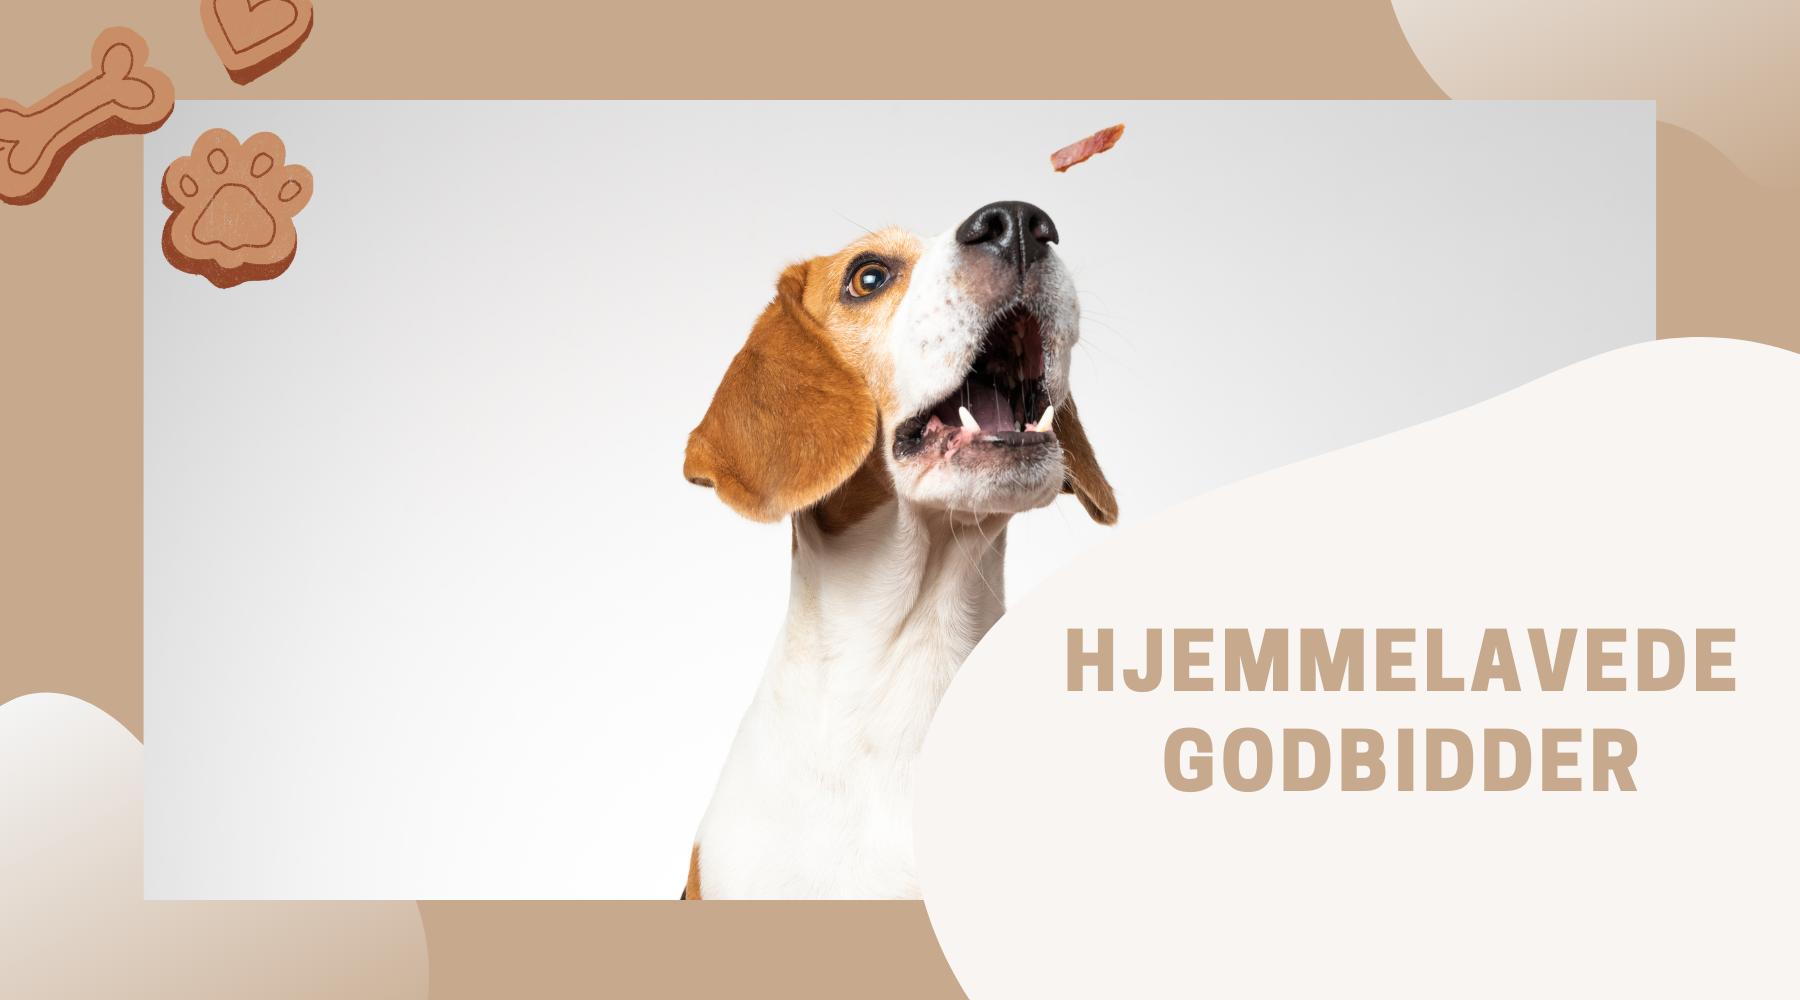 klippe Reception nuttet Hjemmelavede Godbidder til hunde: Sundt, lækkert og nemme opskrifter –  Luksushund